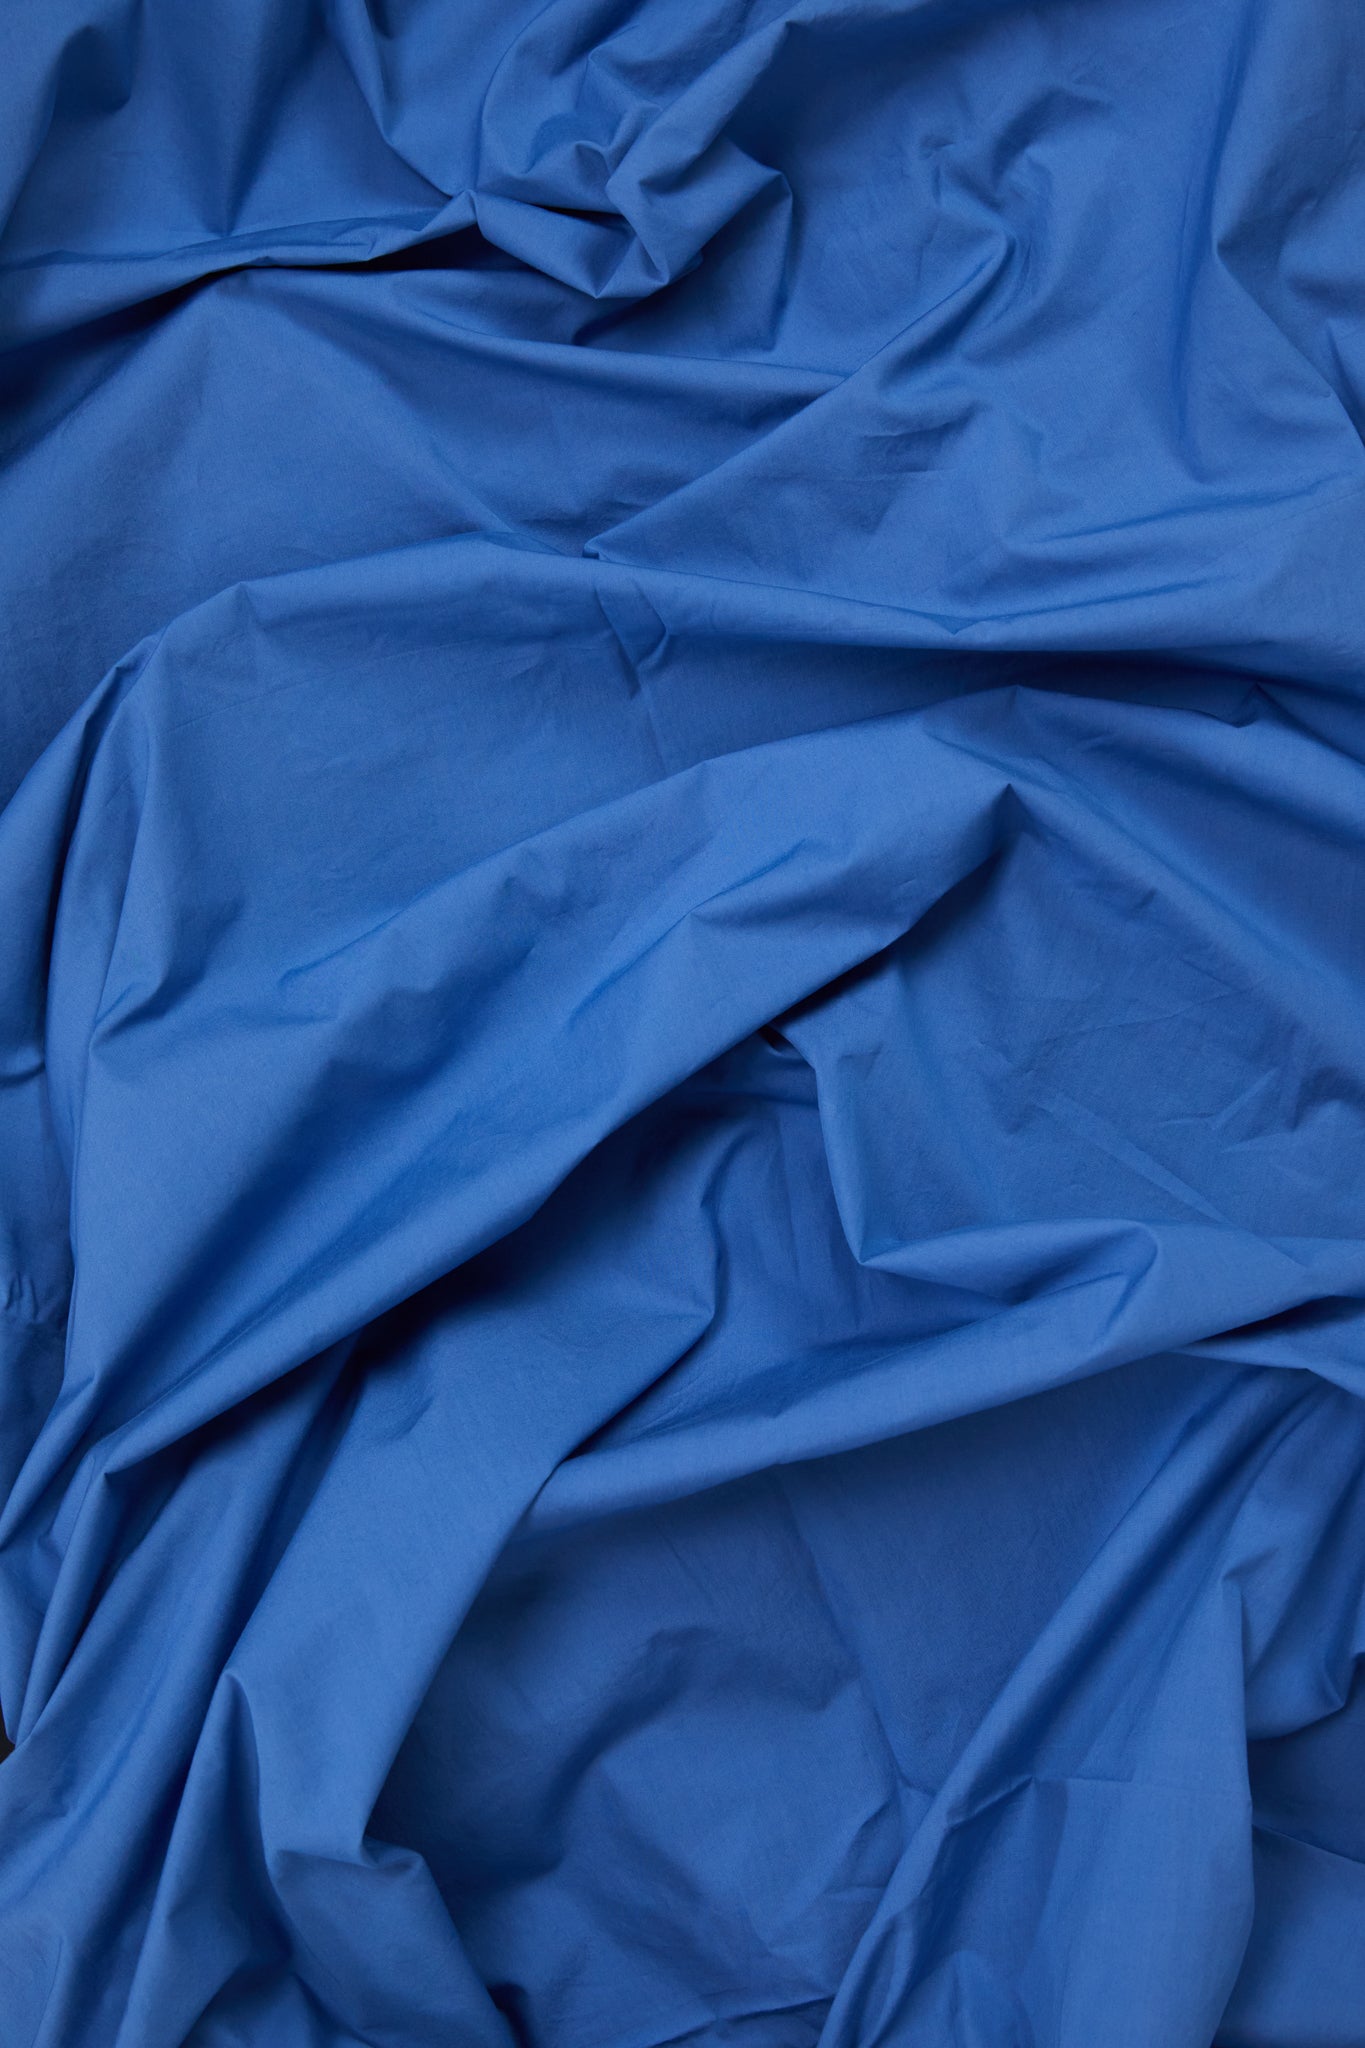 Pillowcase Pair in Blue Blue